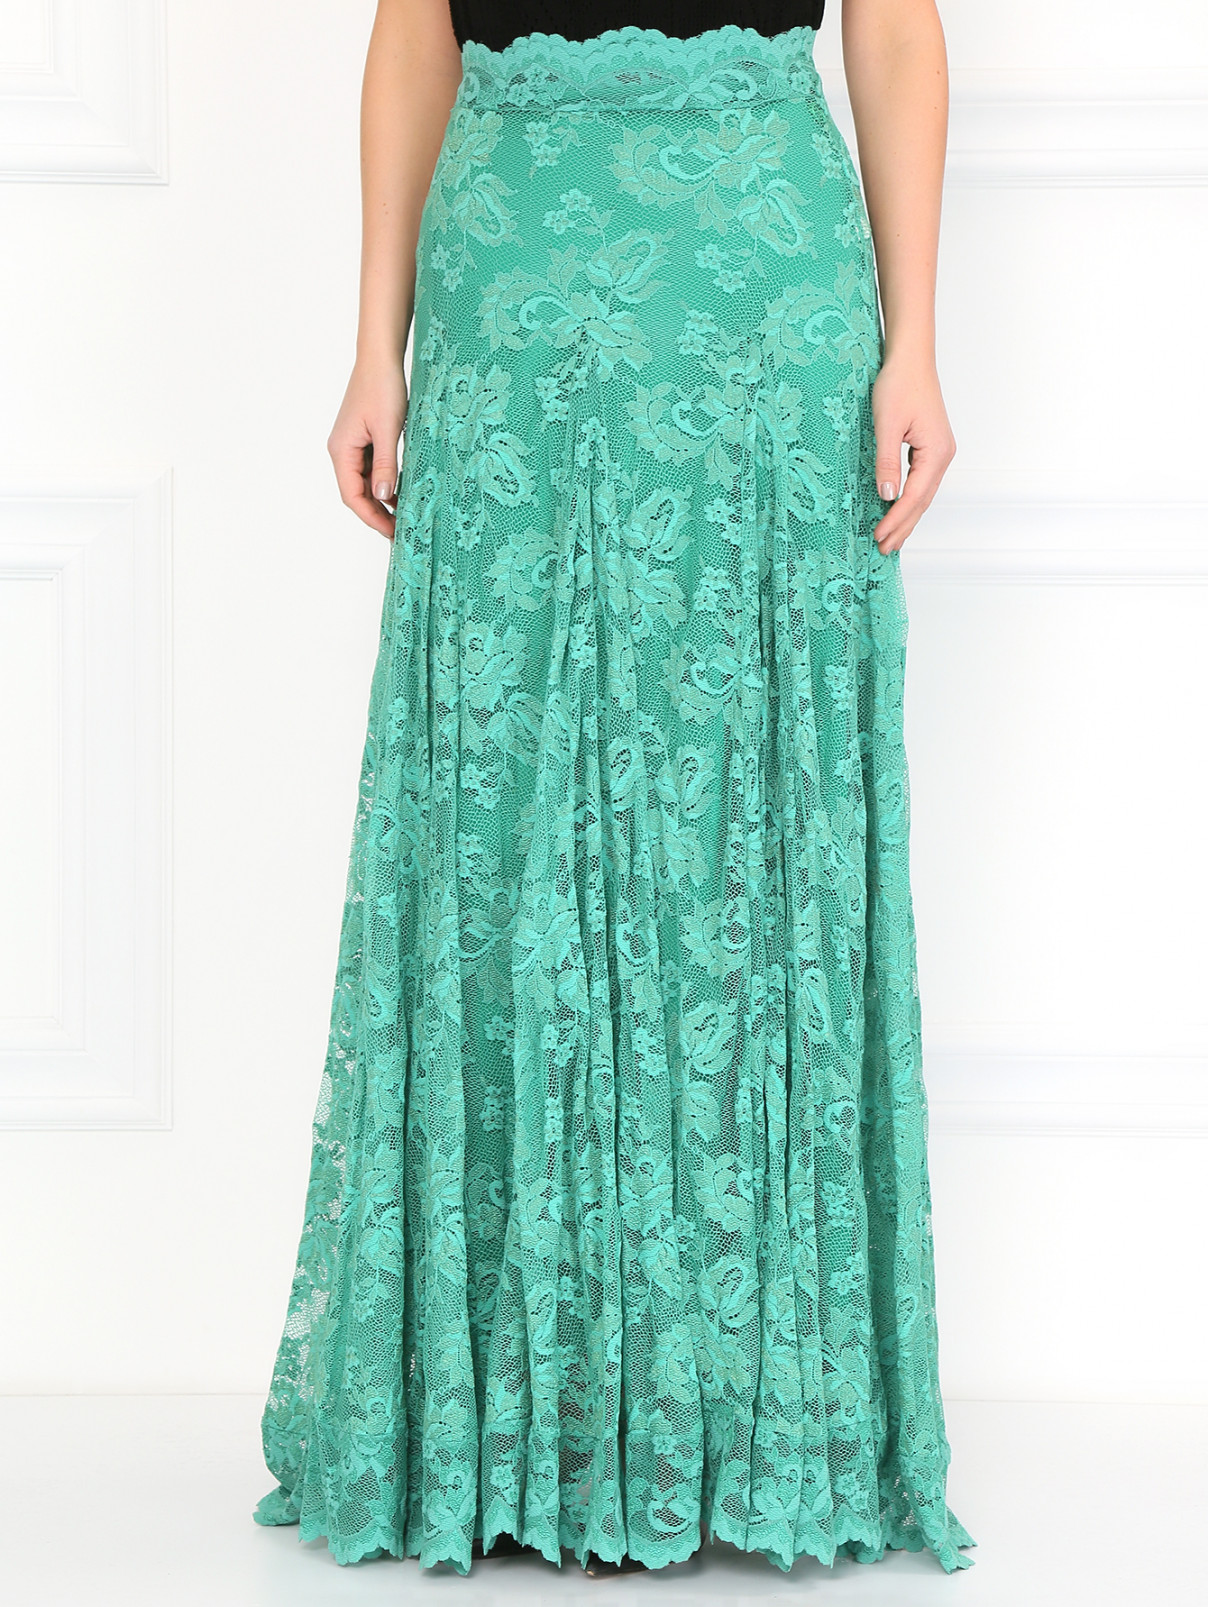 Кружевная юбка-макси Olvi's  –  Модель Верх-Низ  – Цвет:  Зеленый